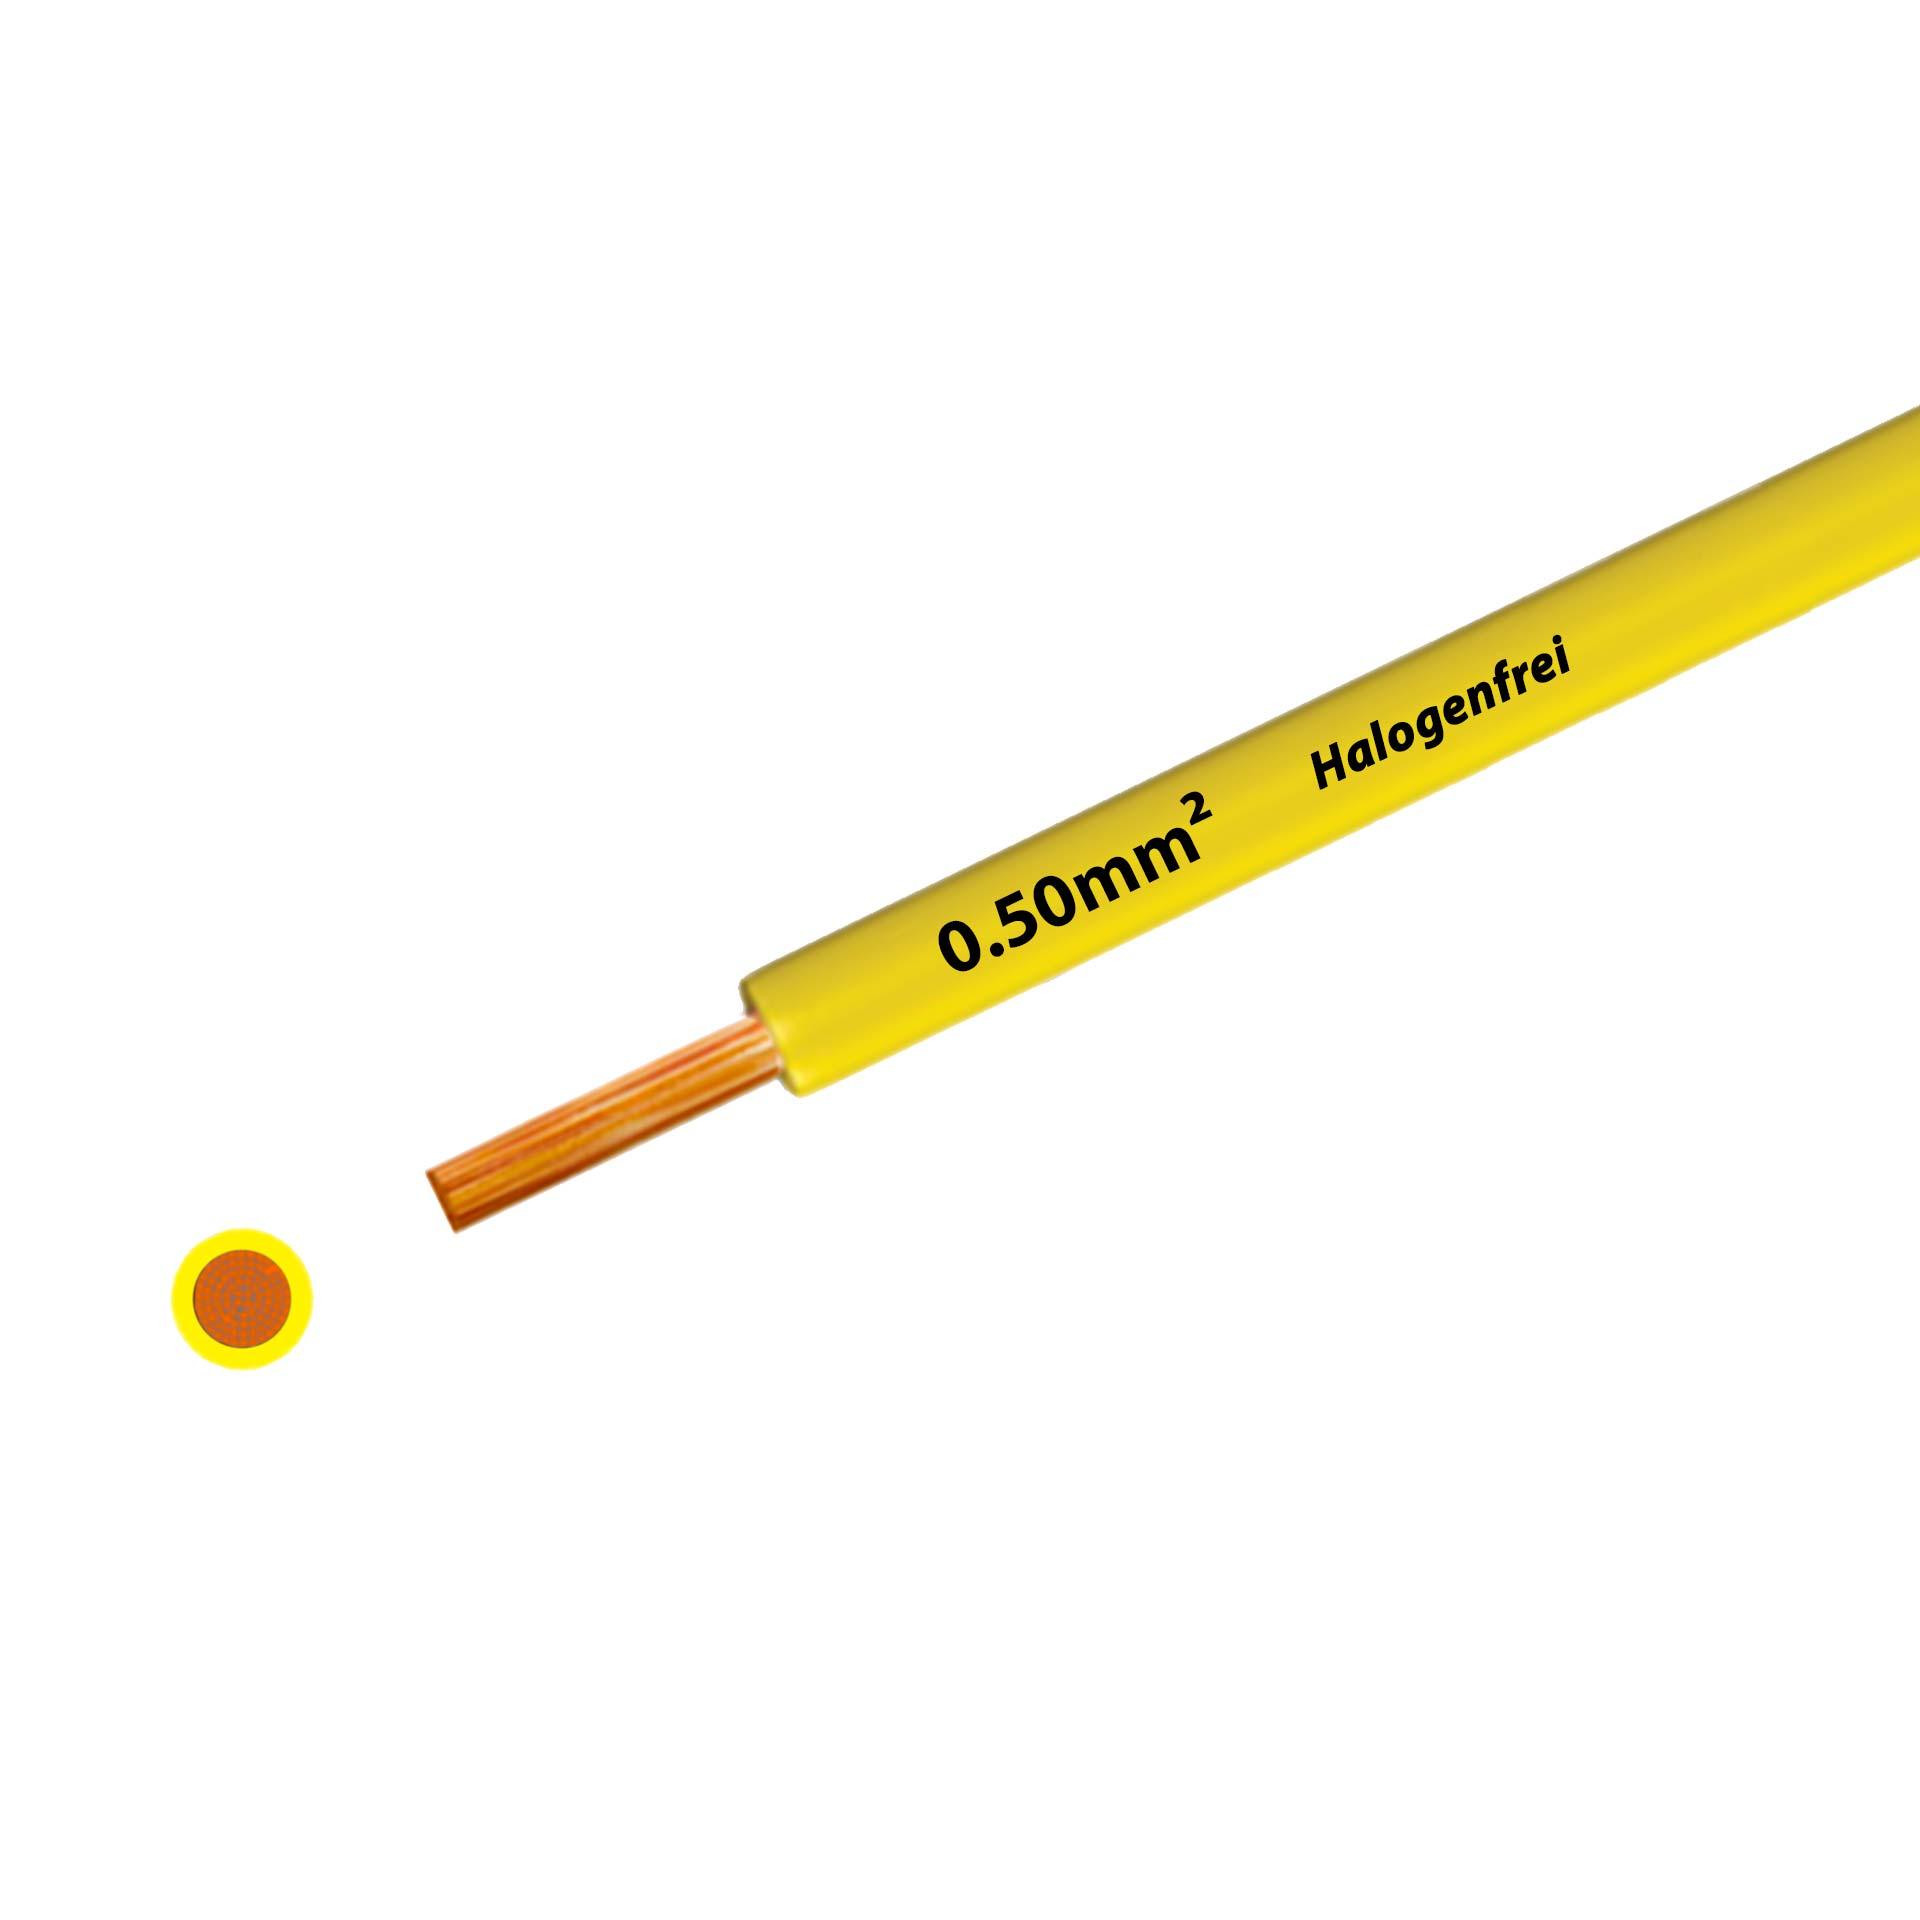 Litze halogenfrei 90° C , 500V, 0.50 mm2, gelb (RAL 1021), auf Kunststoffrolle